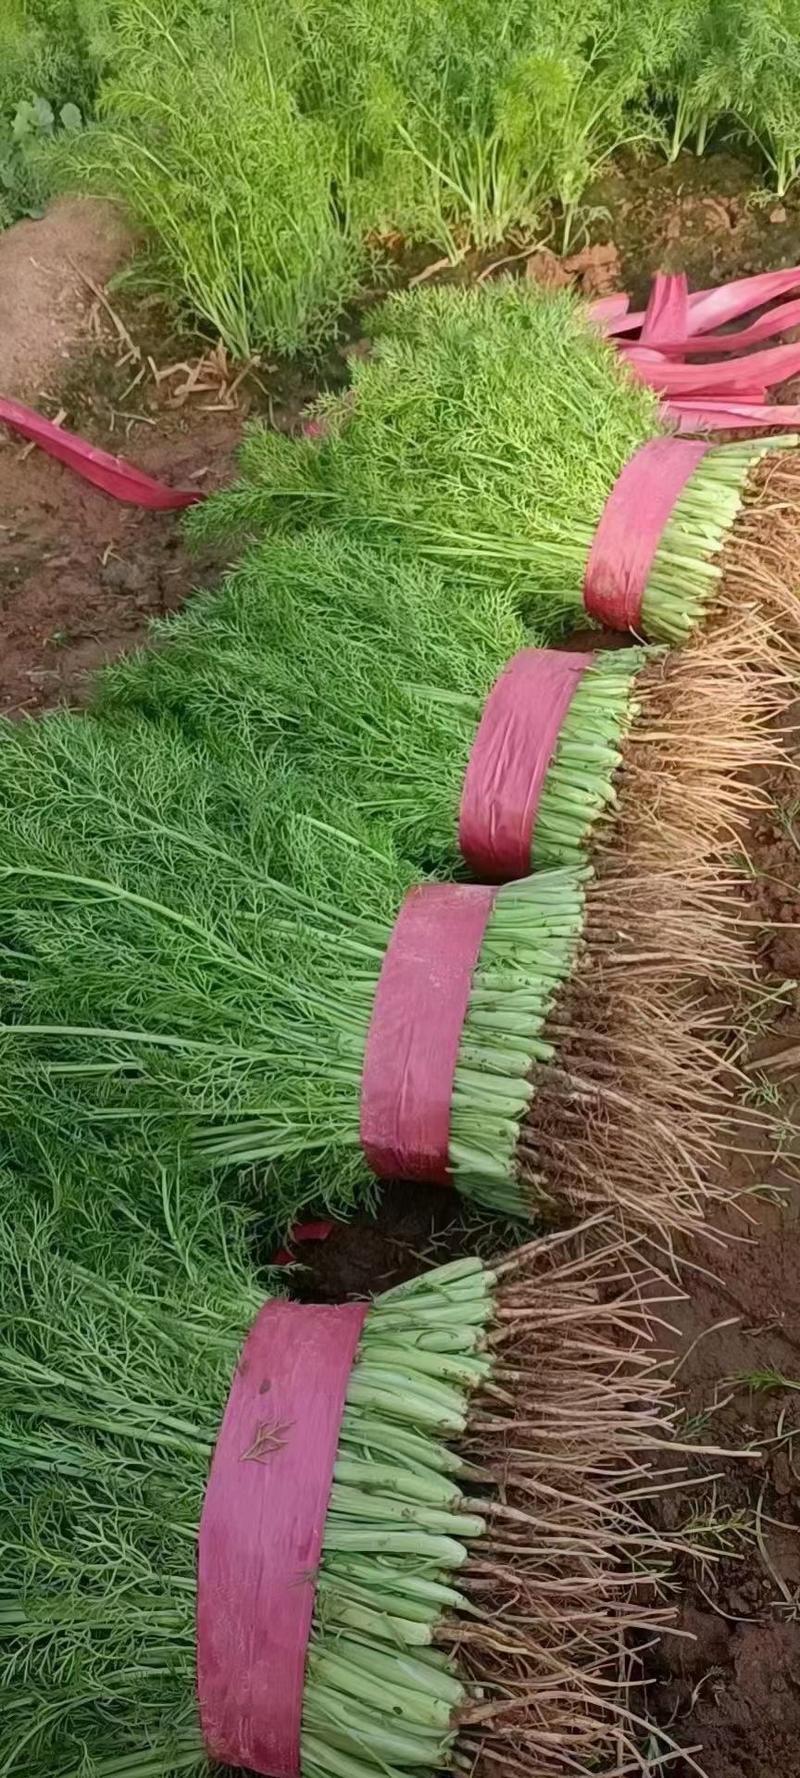 河北邯郸茴香苗，颜色绿，叶片厚，欢迎老板采购